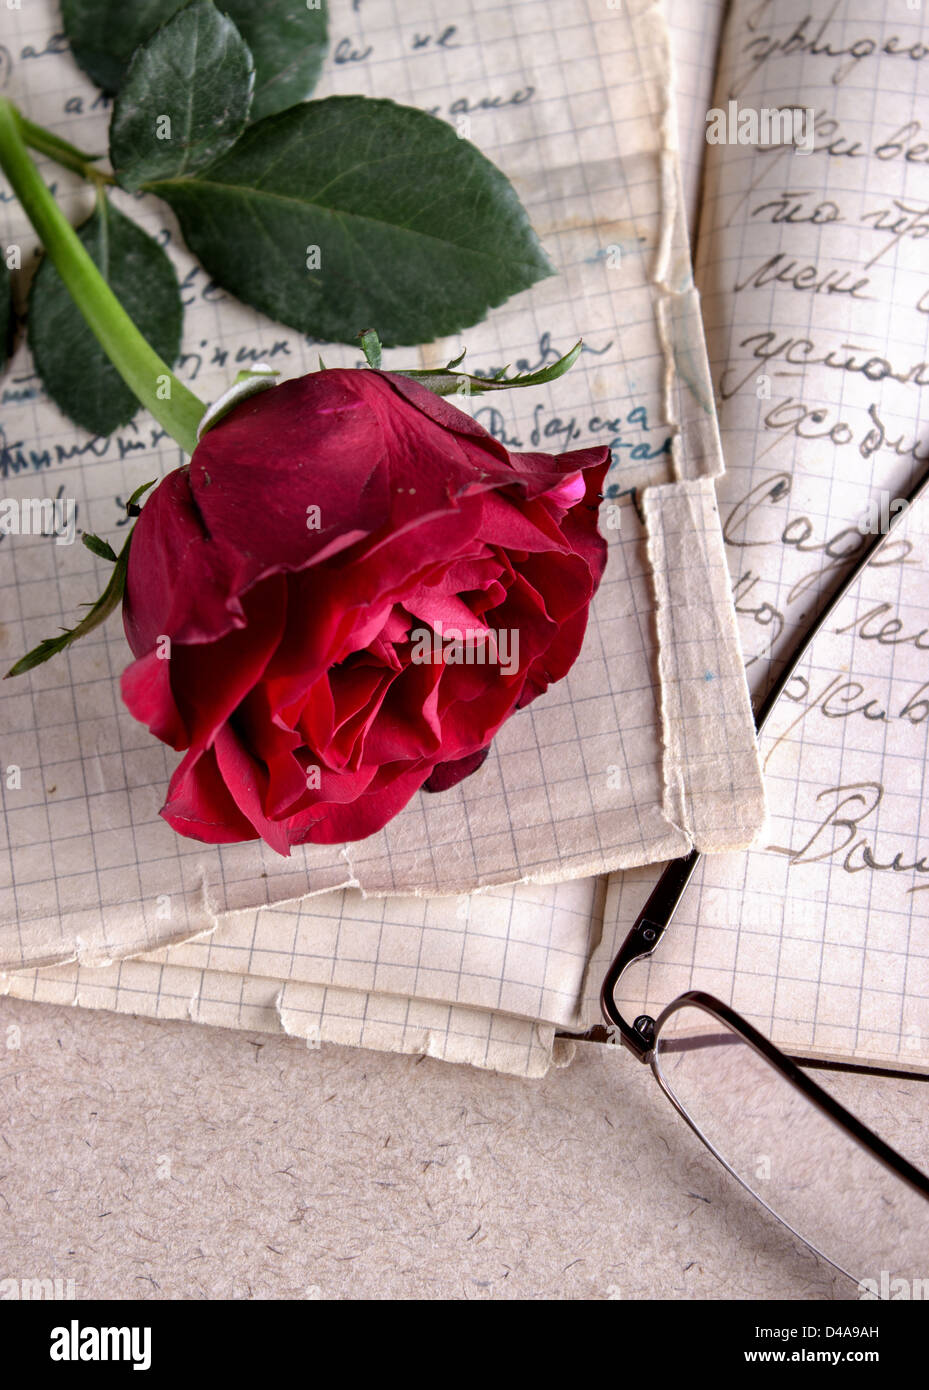 Lettera d'amore immagini e fotografie stock ad alta risoluzione - Alamy